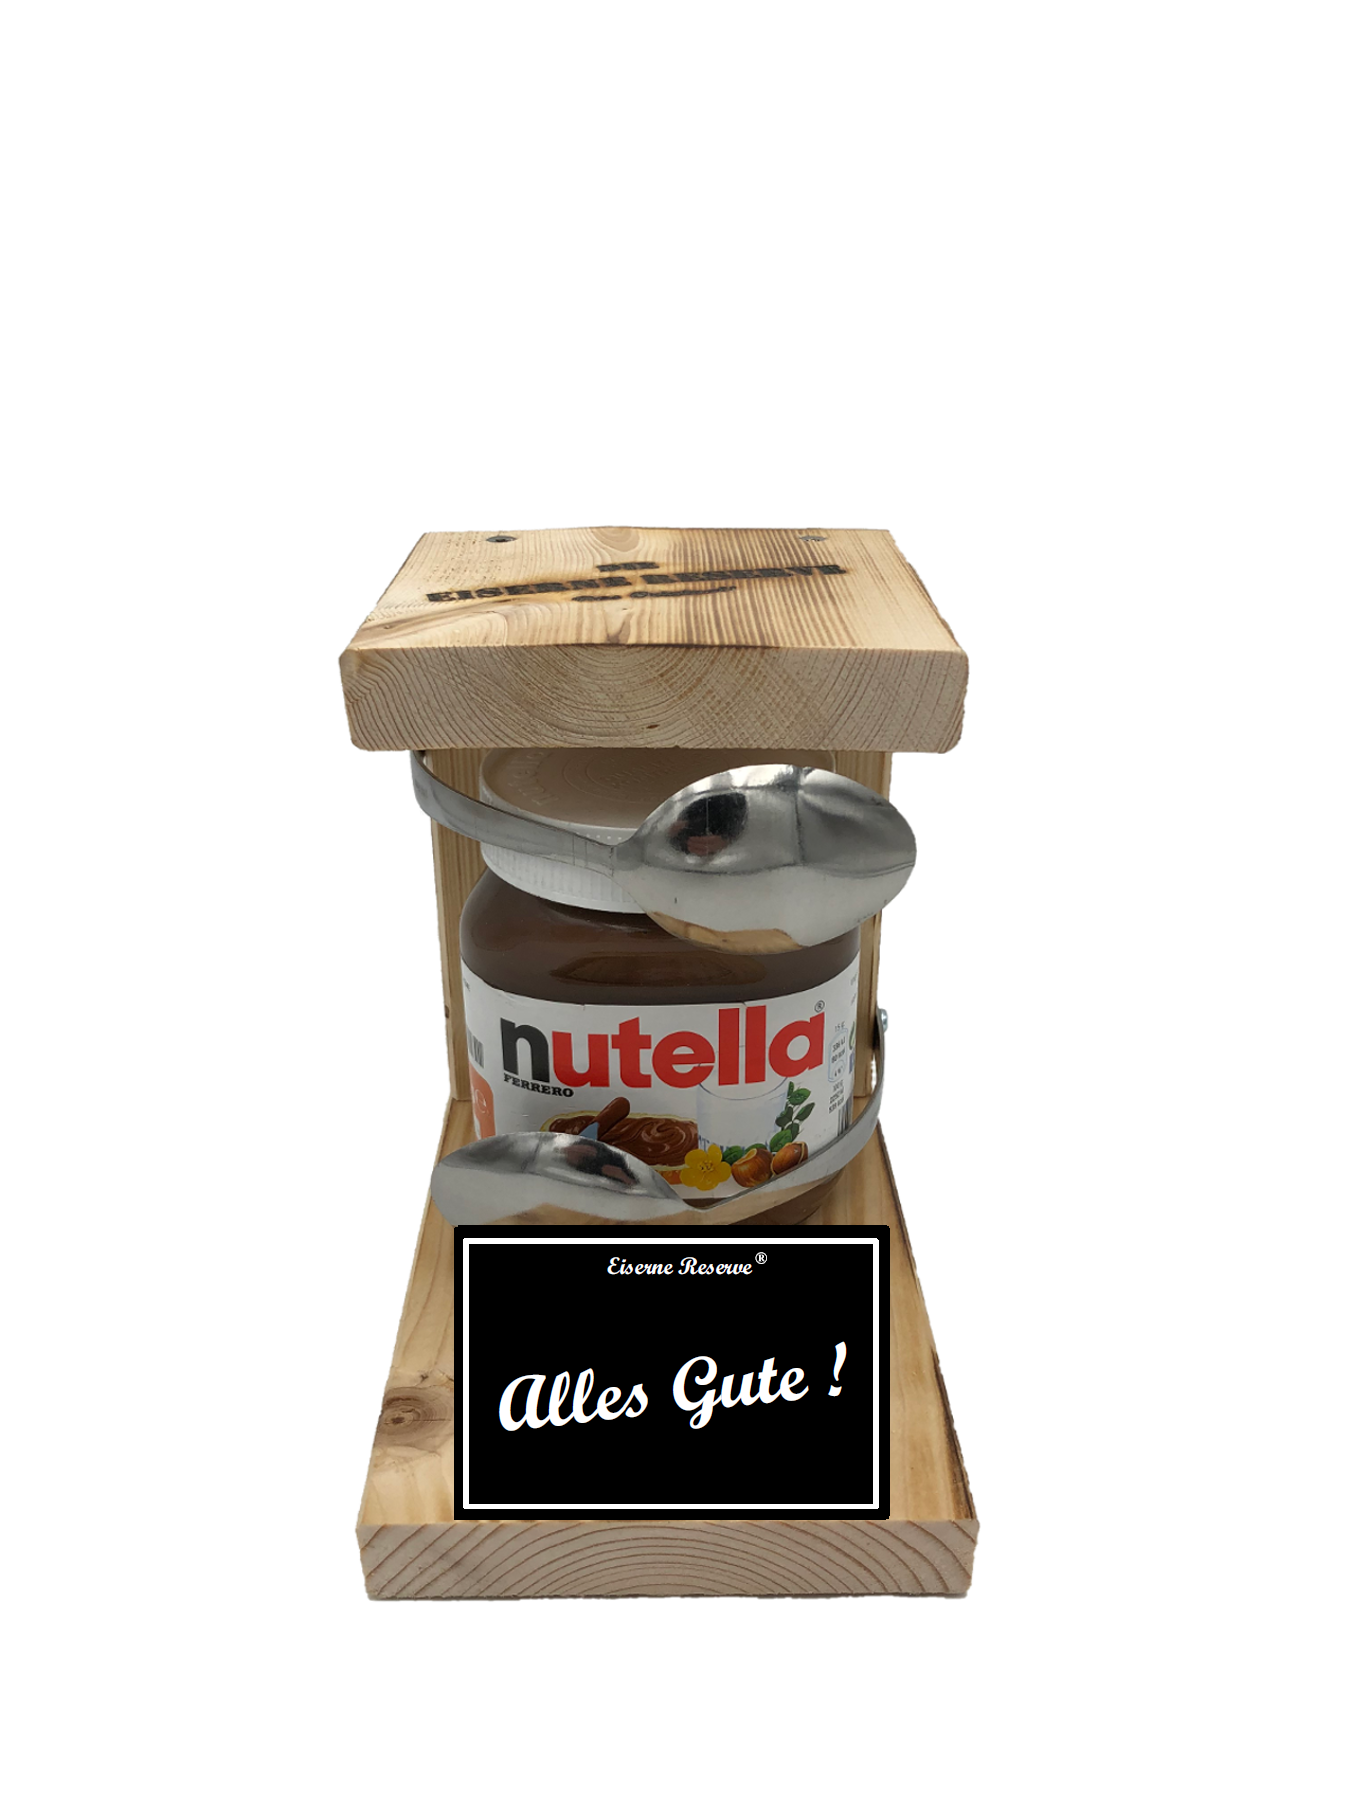 Alles Gute - Löffel Nutella Geschenk - Die Nutella Geschenkidee